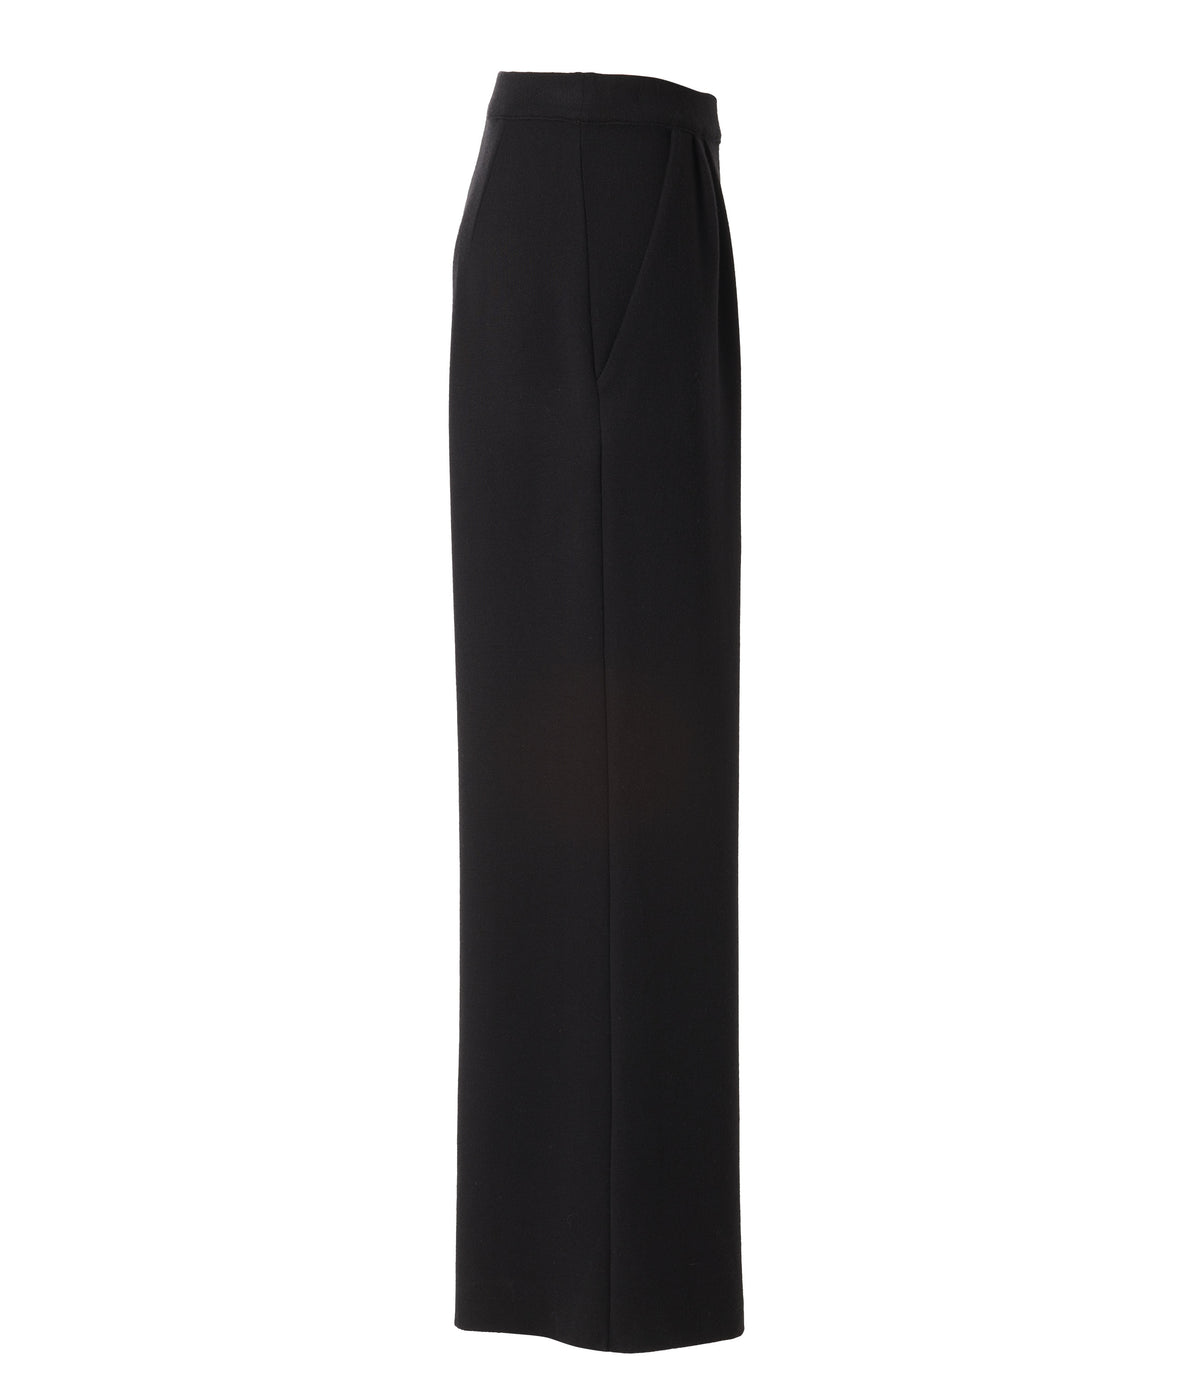 Manrico - Hose aus Cashmere-Seide-Wolle in schwarz